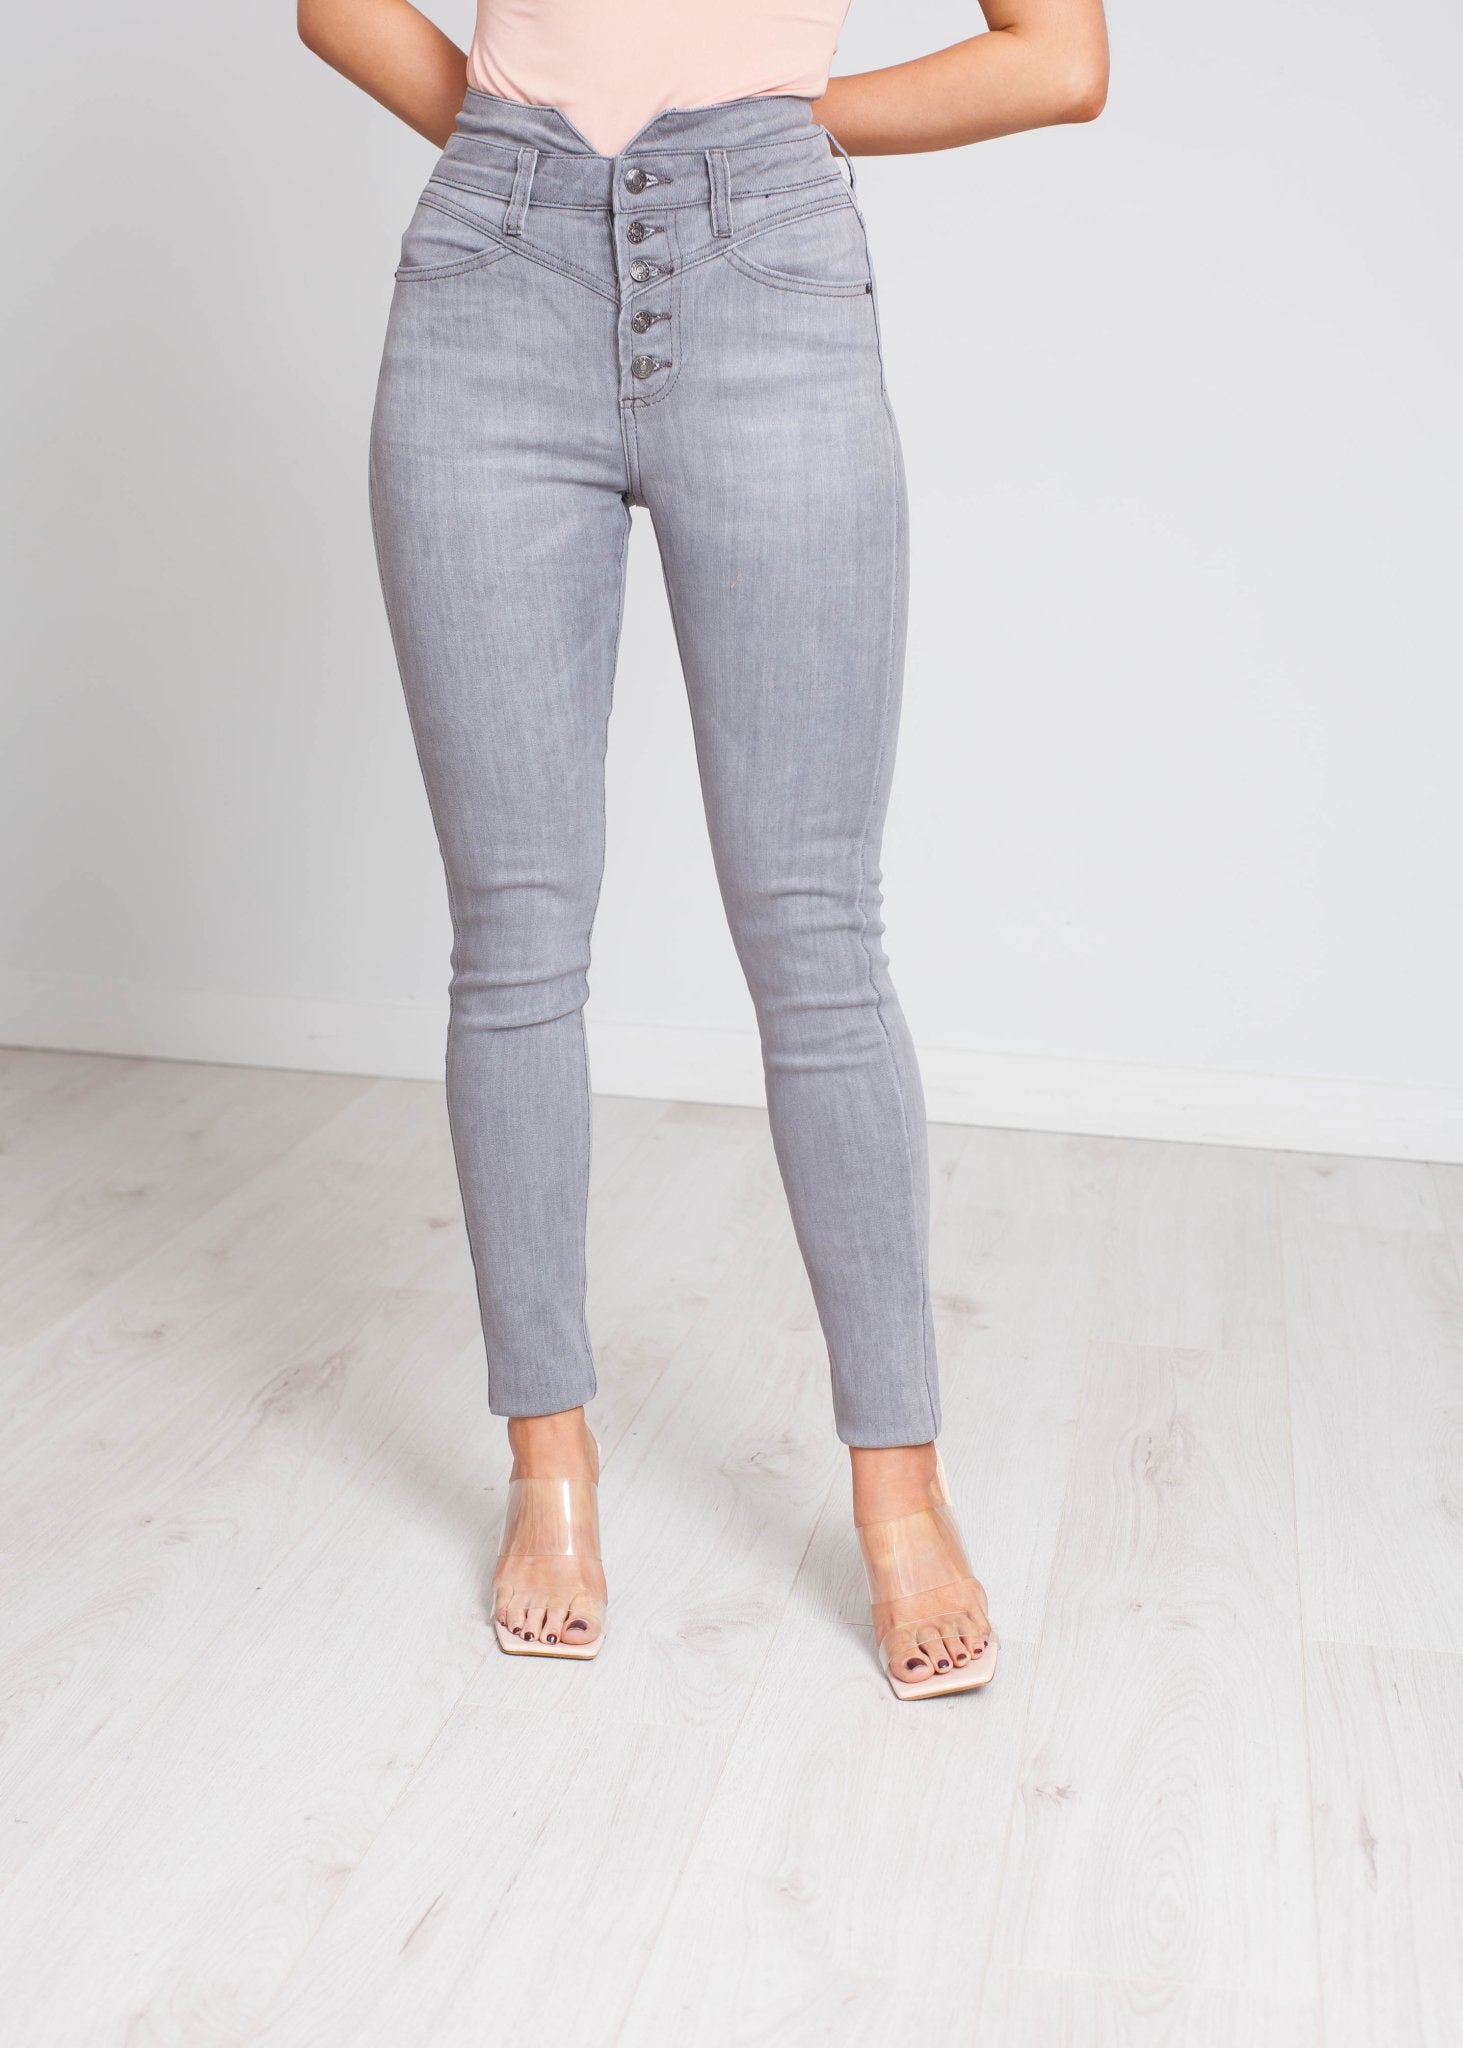 Camilla High Waist Button Jean In Grey - The Walk in Wardrobe